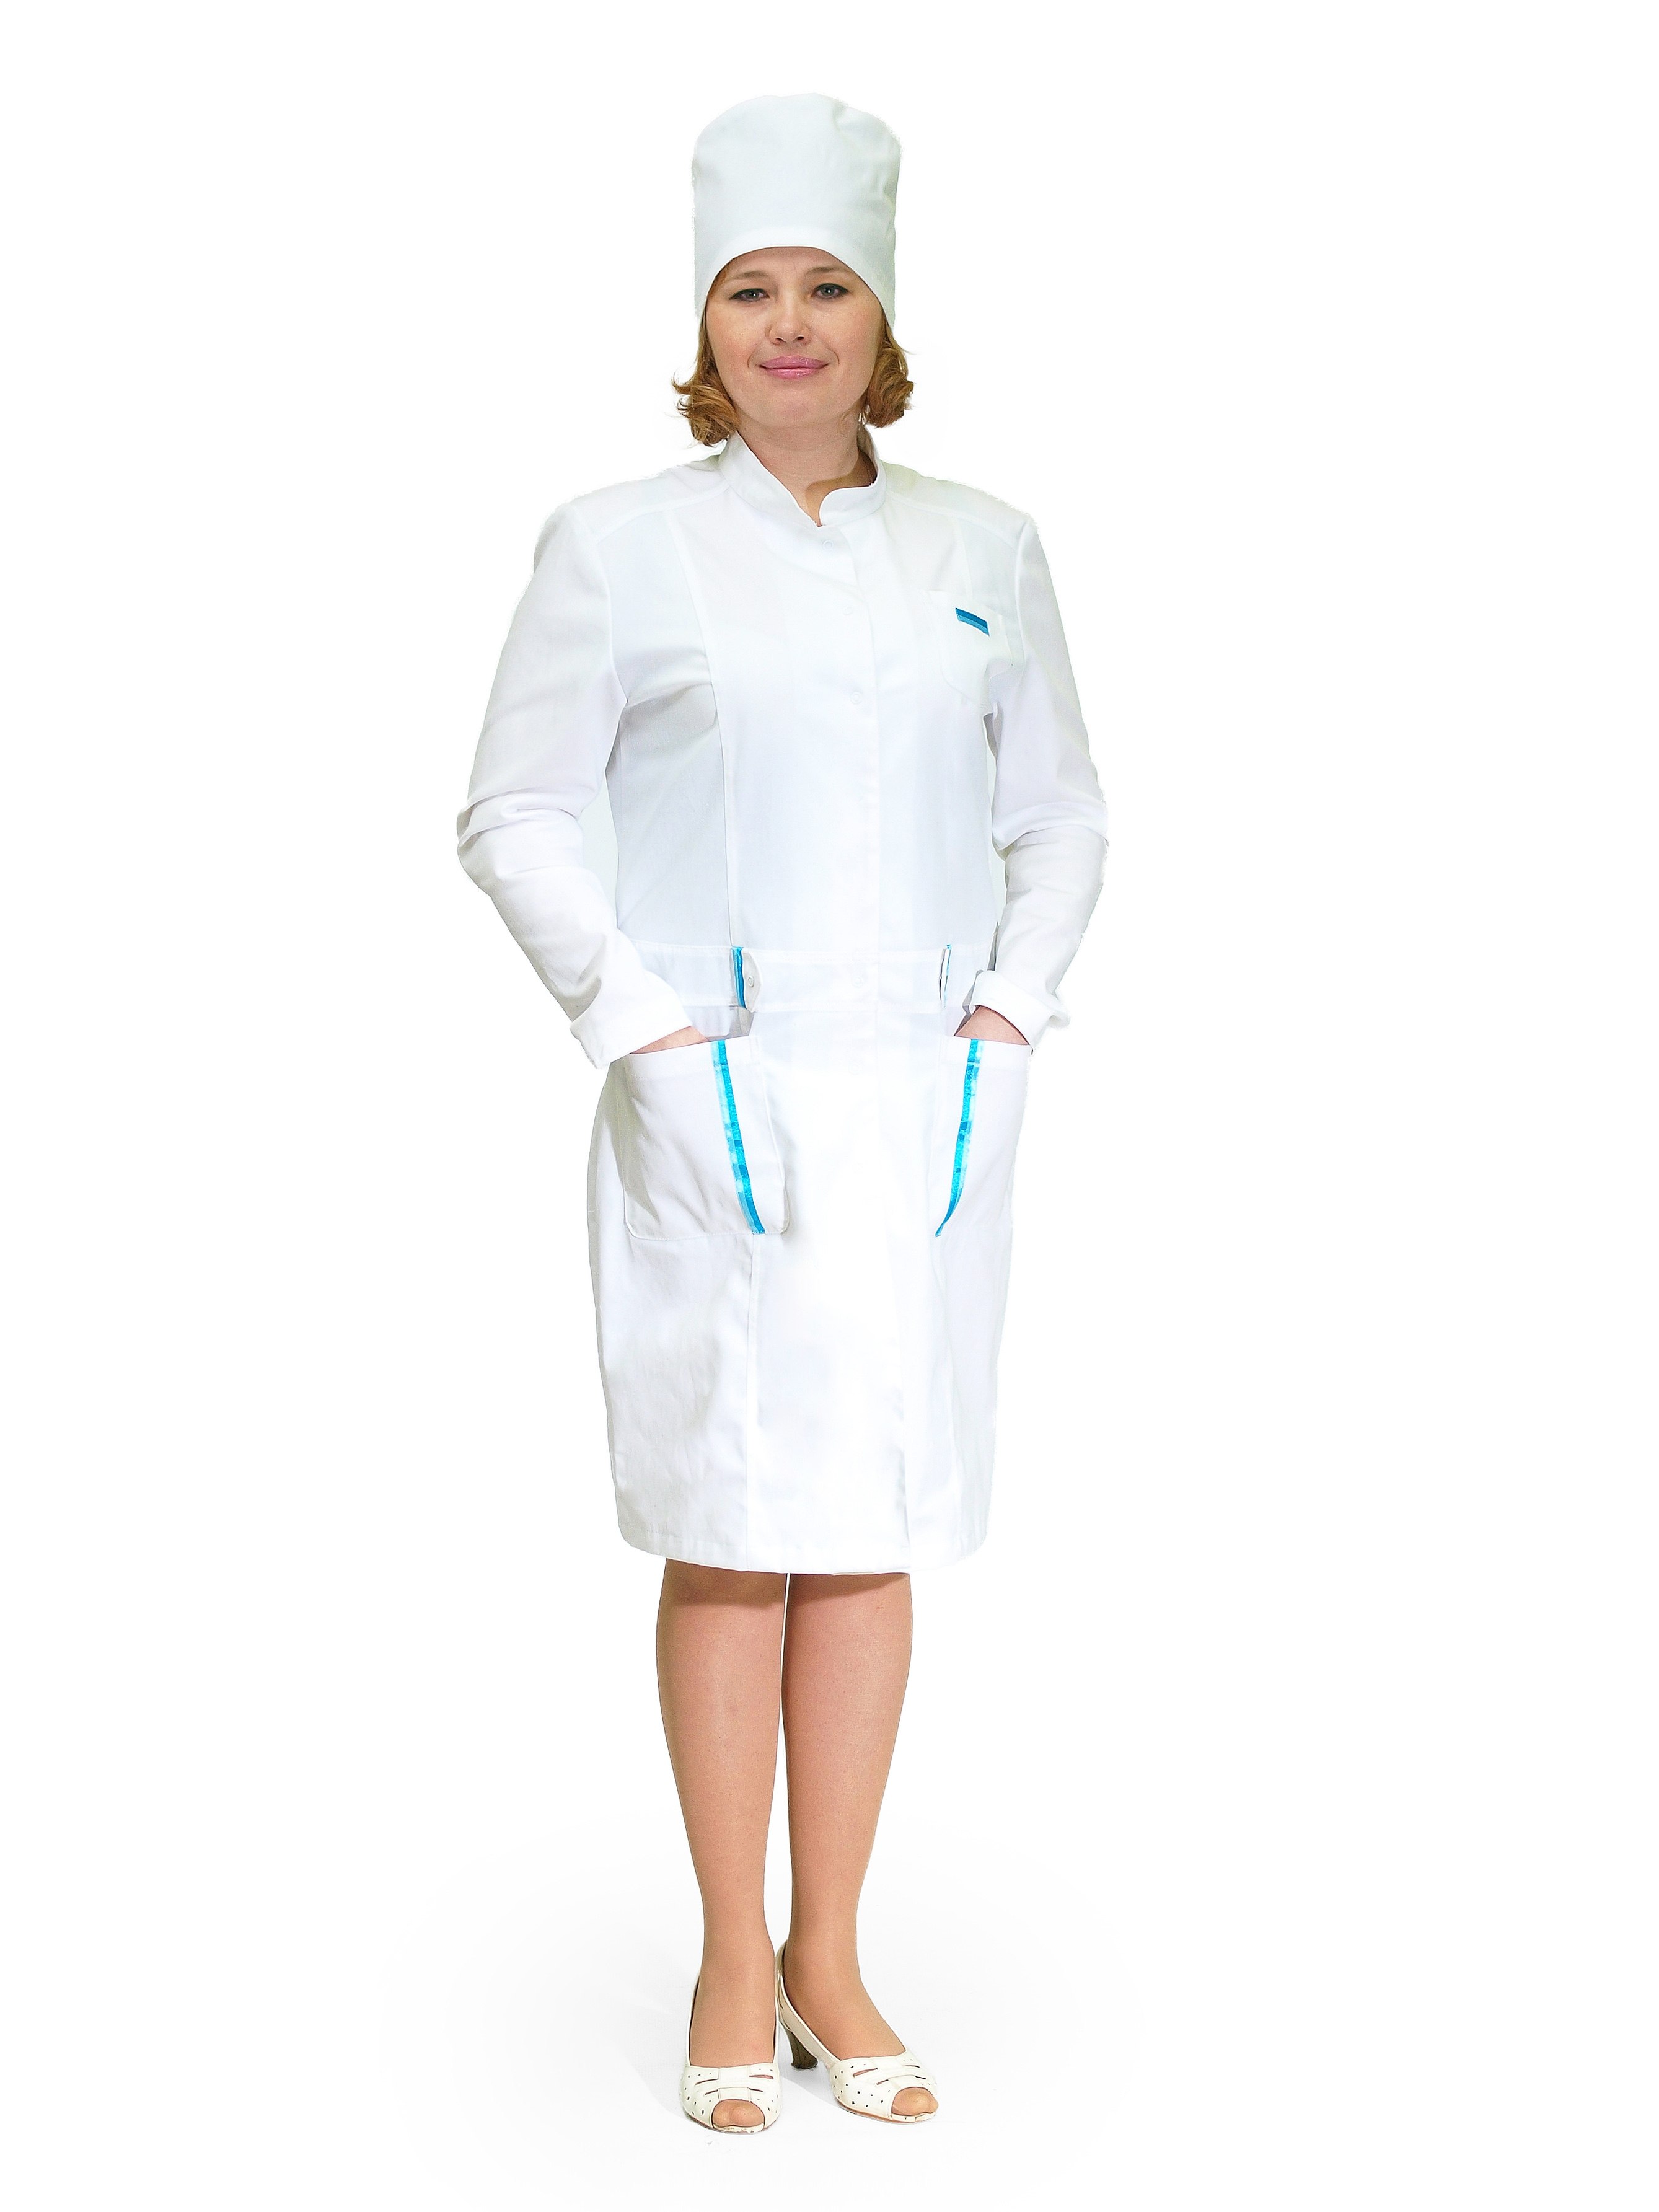 Халат и колпак. Костюм медицинский модель 41 - t Spez-gost. Одежда медсестры. Халат медицинский женский. Медицинский халат и шапочка.